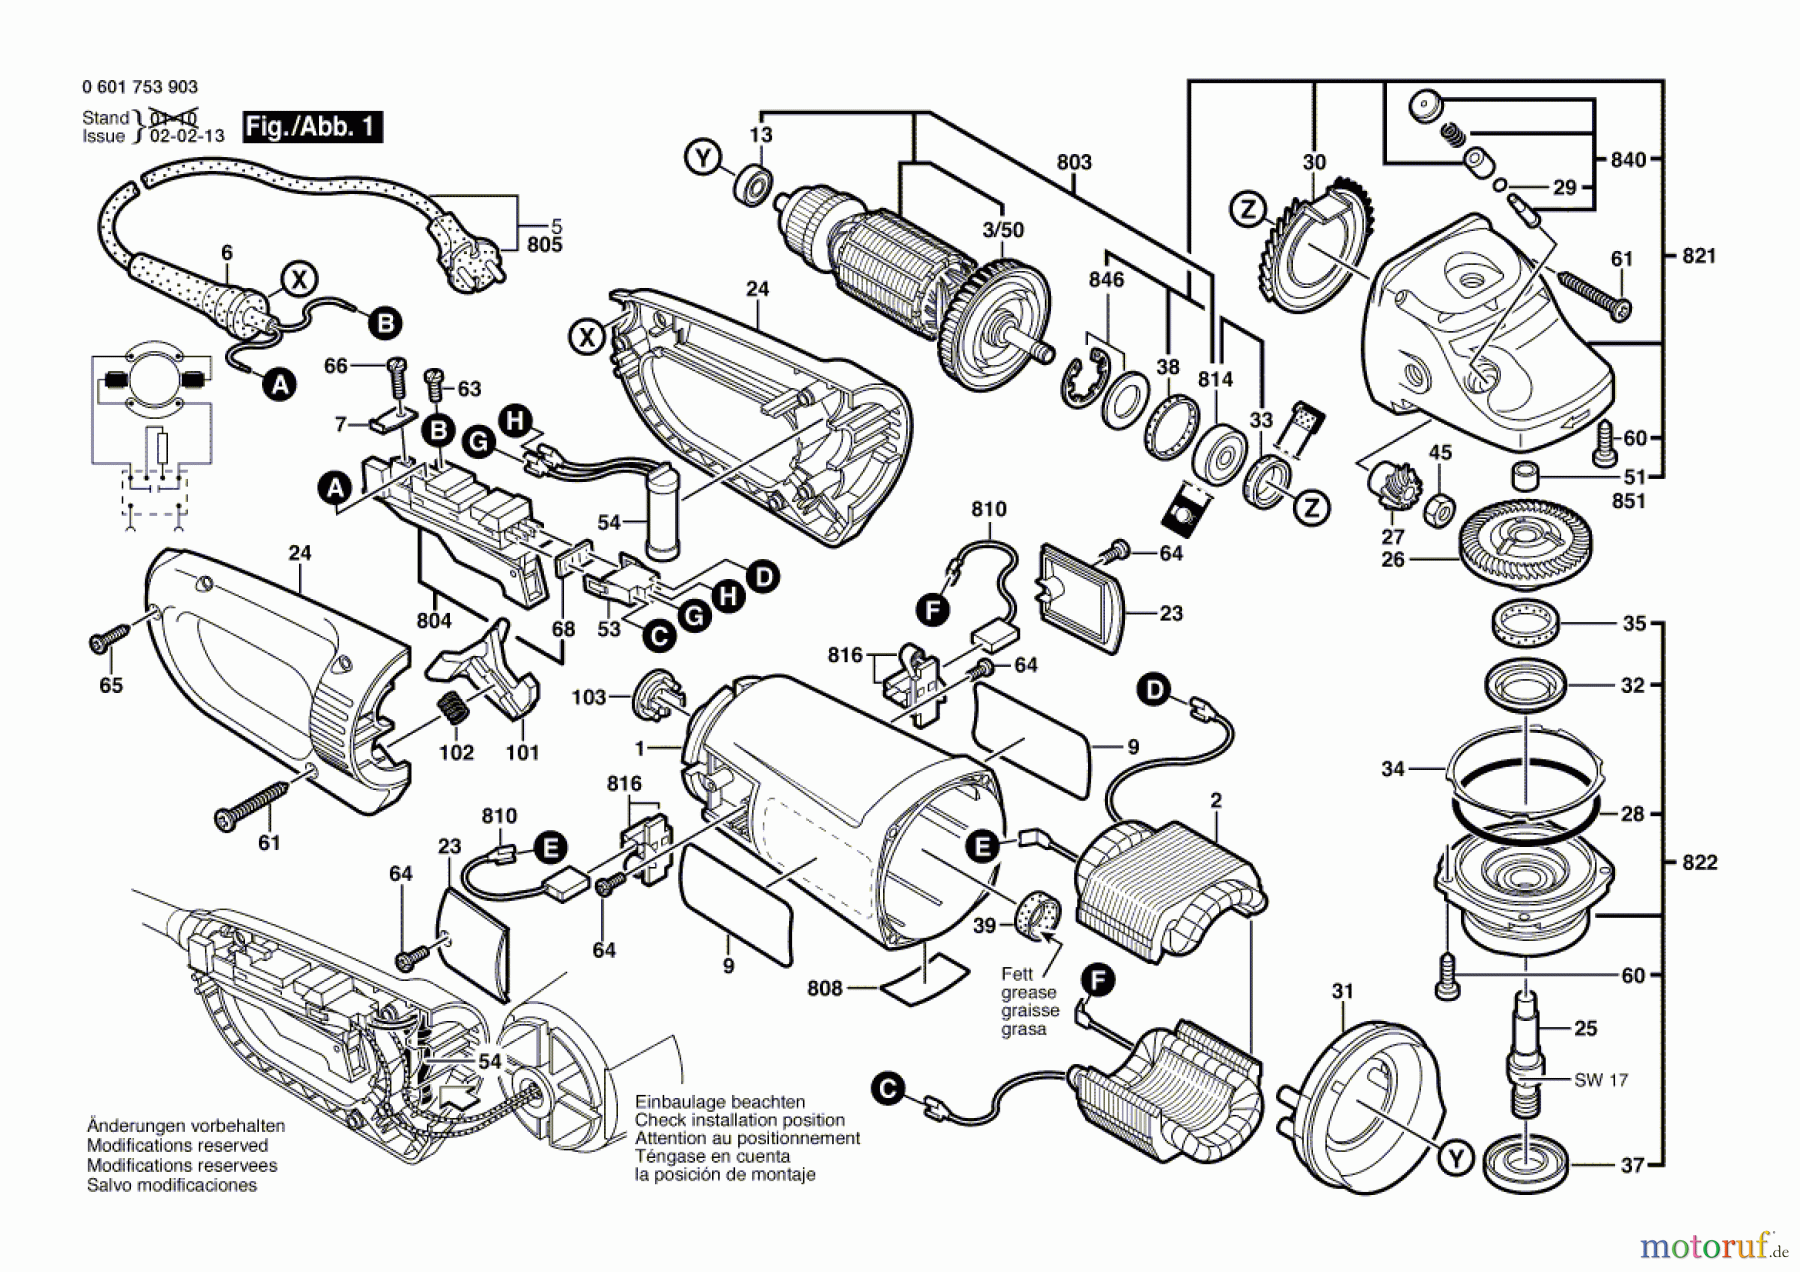  Bosch Werkzeug Winkelschleifer GWS 23-180 J Seite 1